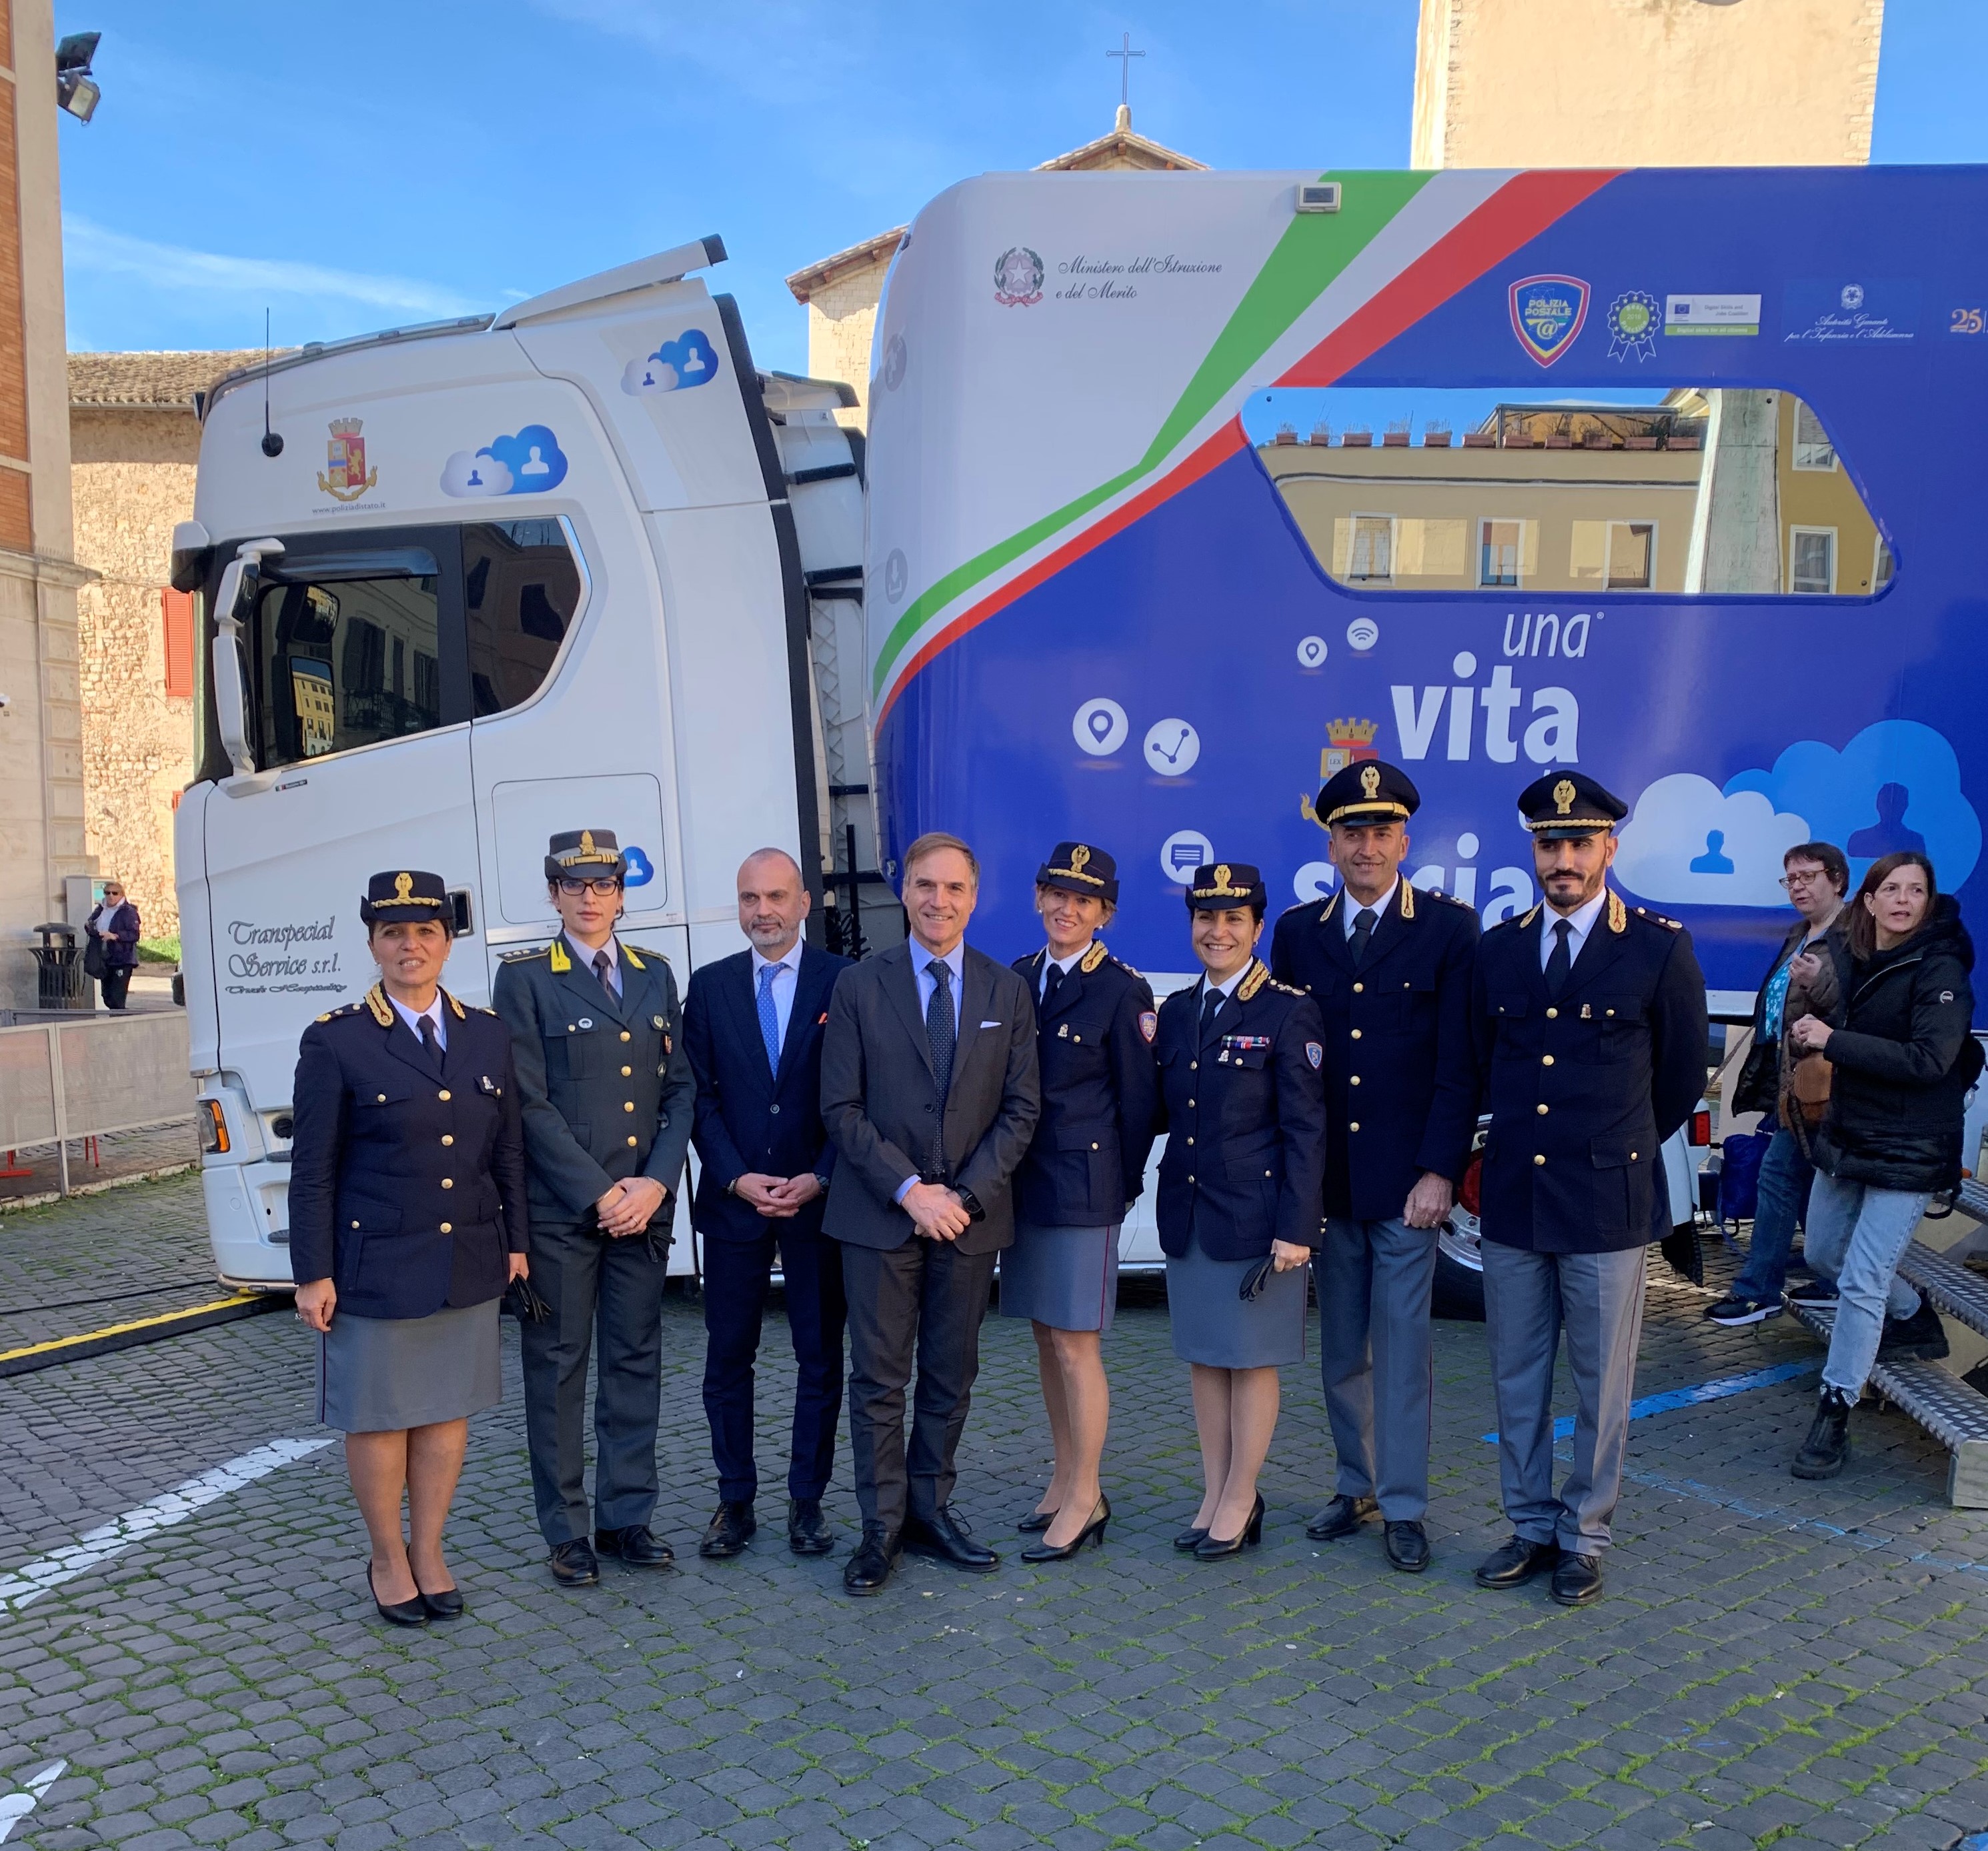 Grande successo ieri a Spoleto per la campagna educativa “Una vita da social” della Polizia di Stato